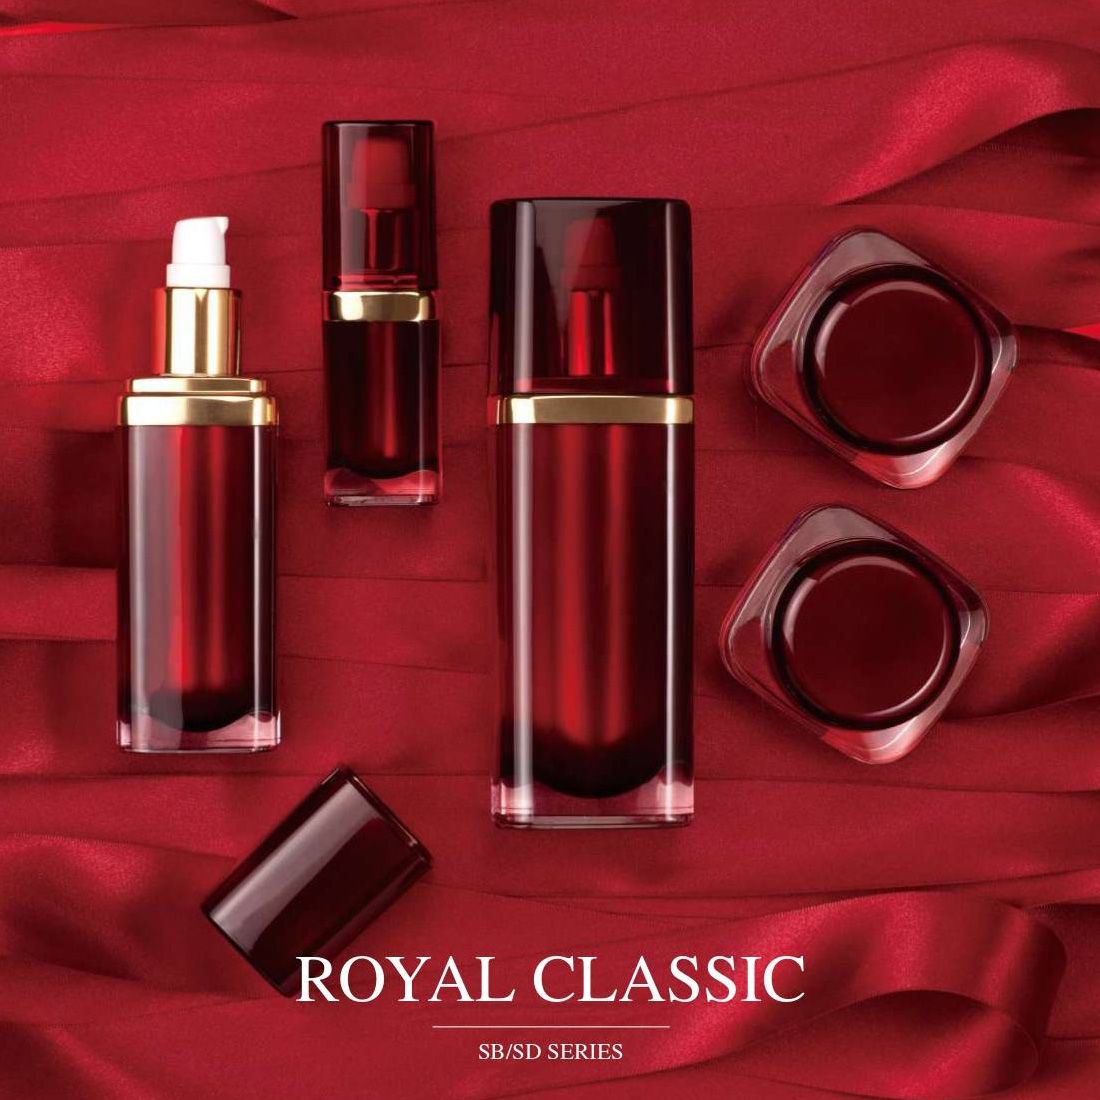 Royal Classics (บรรจุภัณฑ์เครื่องสำอางและผลิตภัณฑ์บำรุงผิวอะคริลิกหรูหรา) ซีรี่ส์ SB / SD